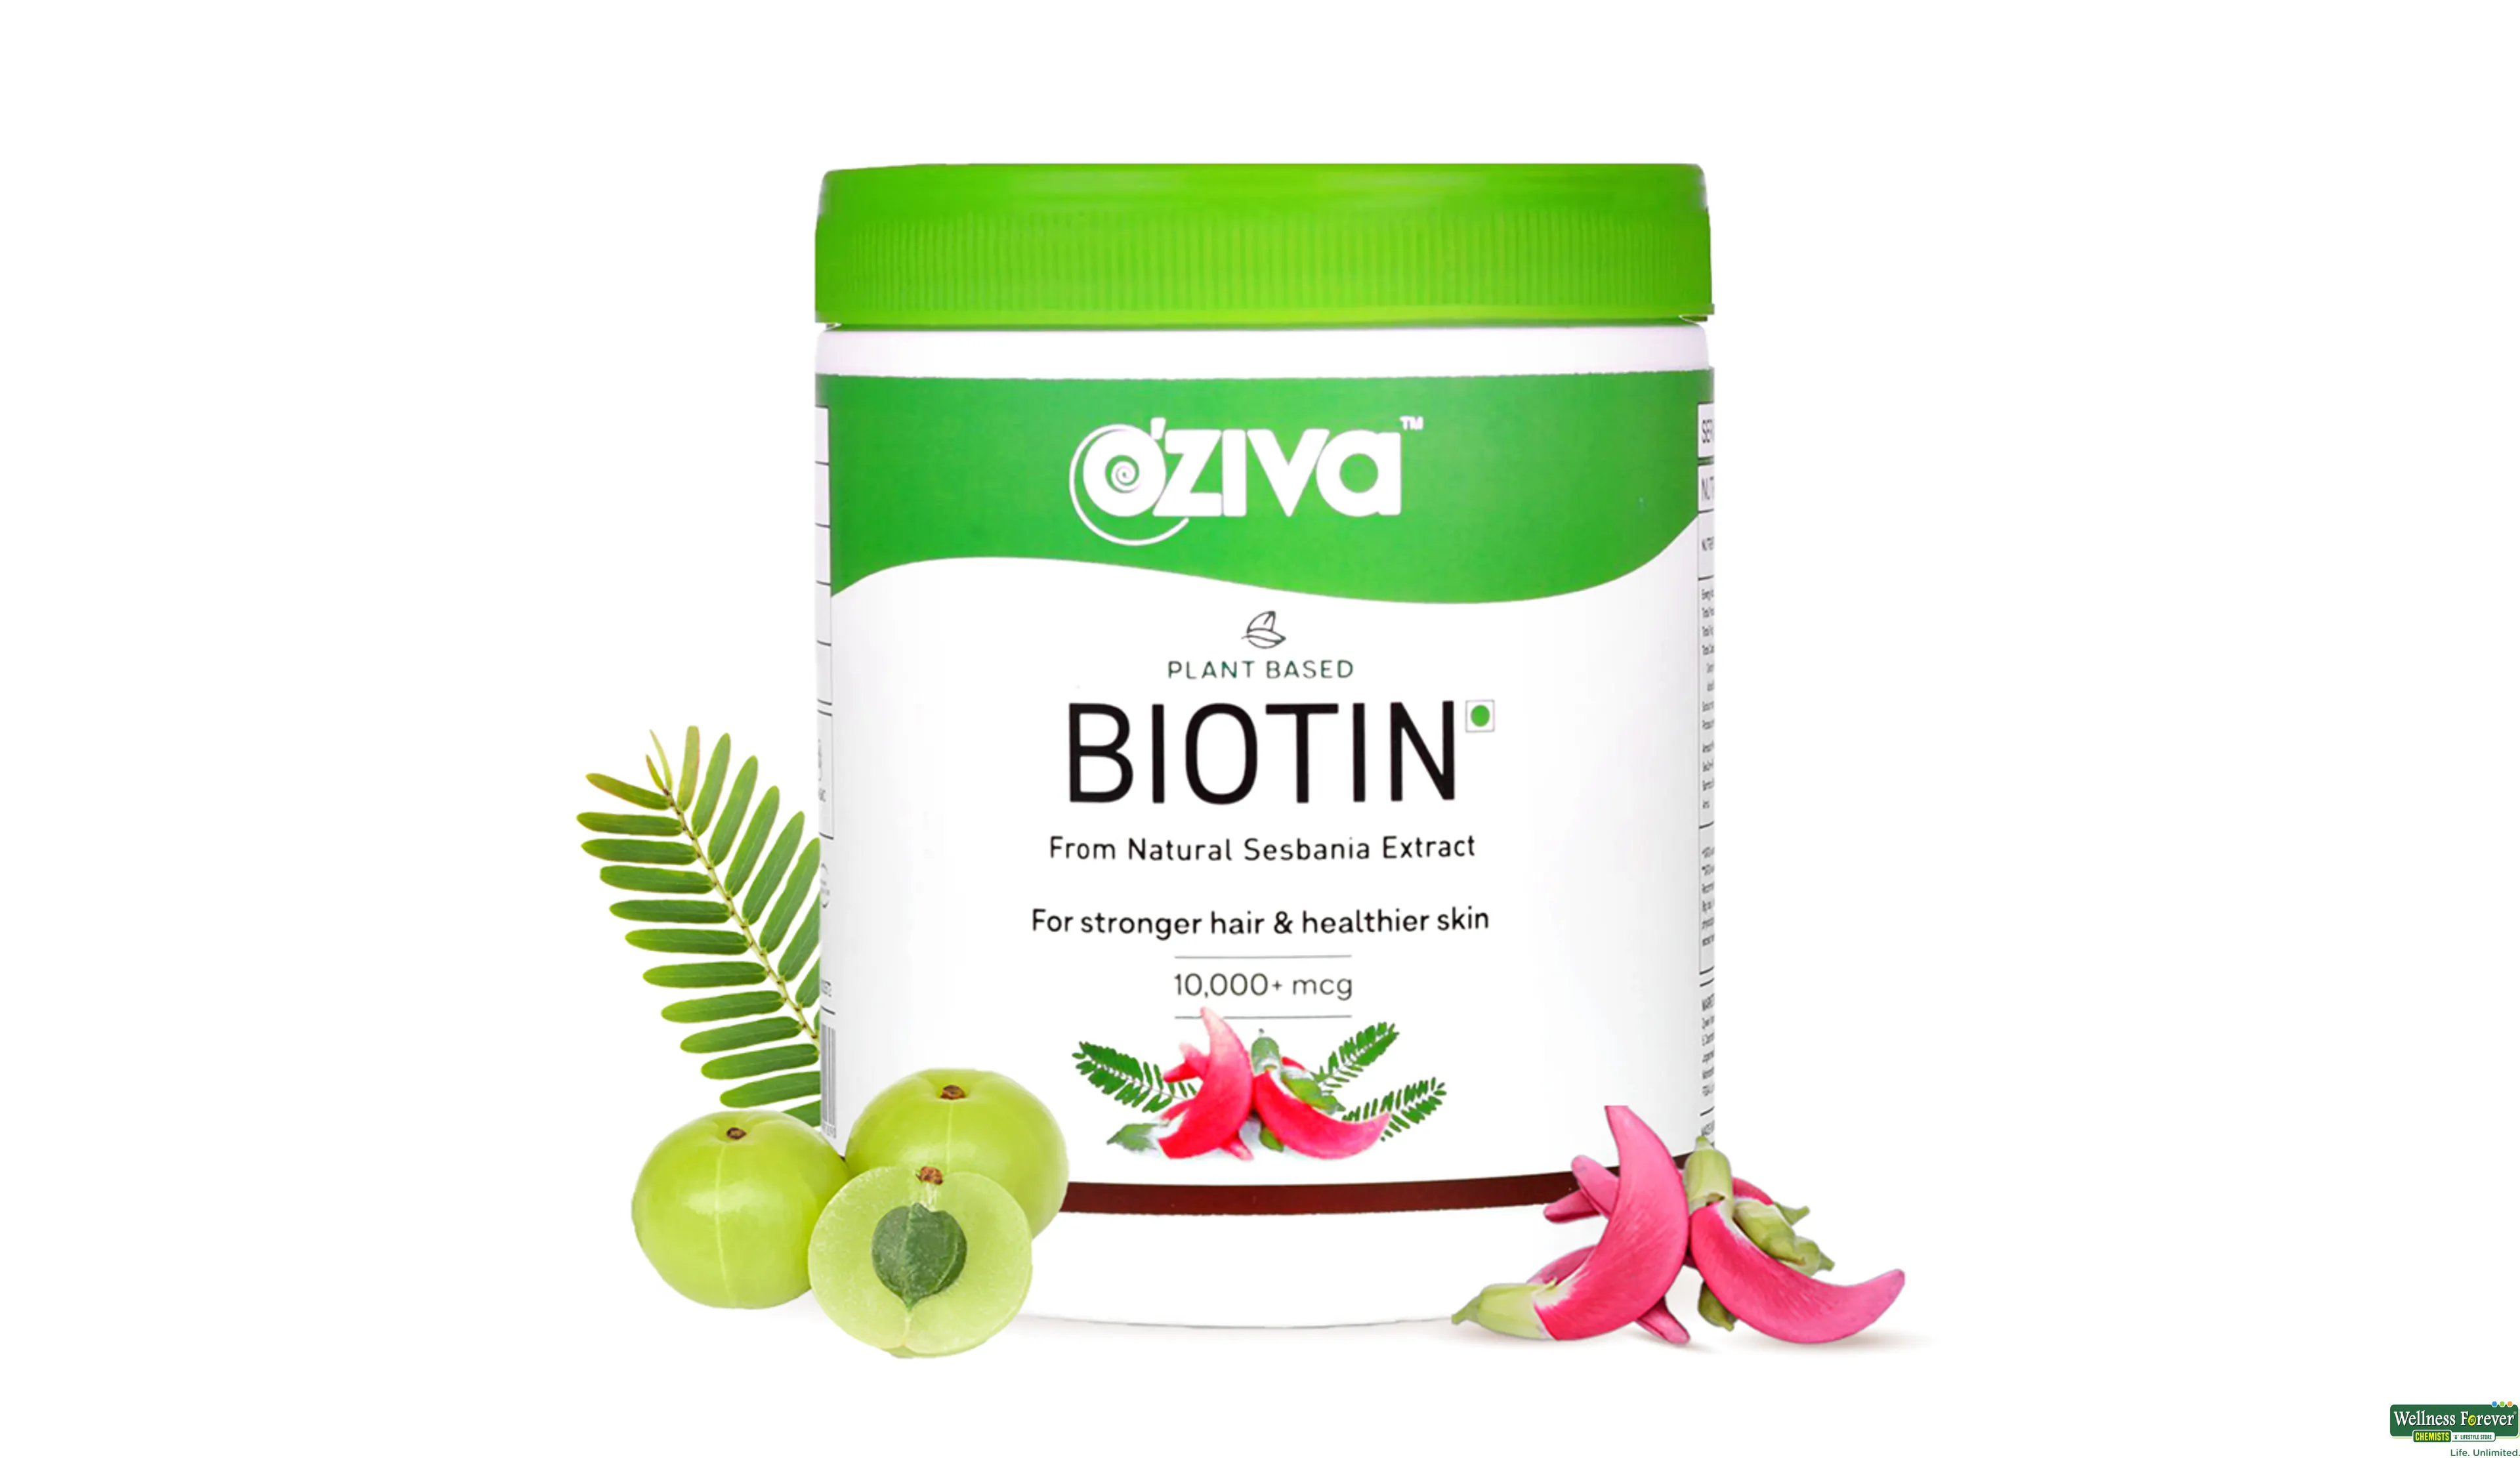 OZIVA PLANT BASED BIOTIN 125GM- 1, 125GM, 